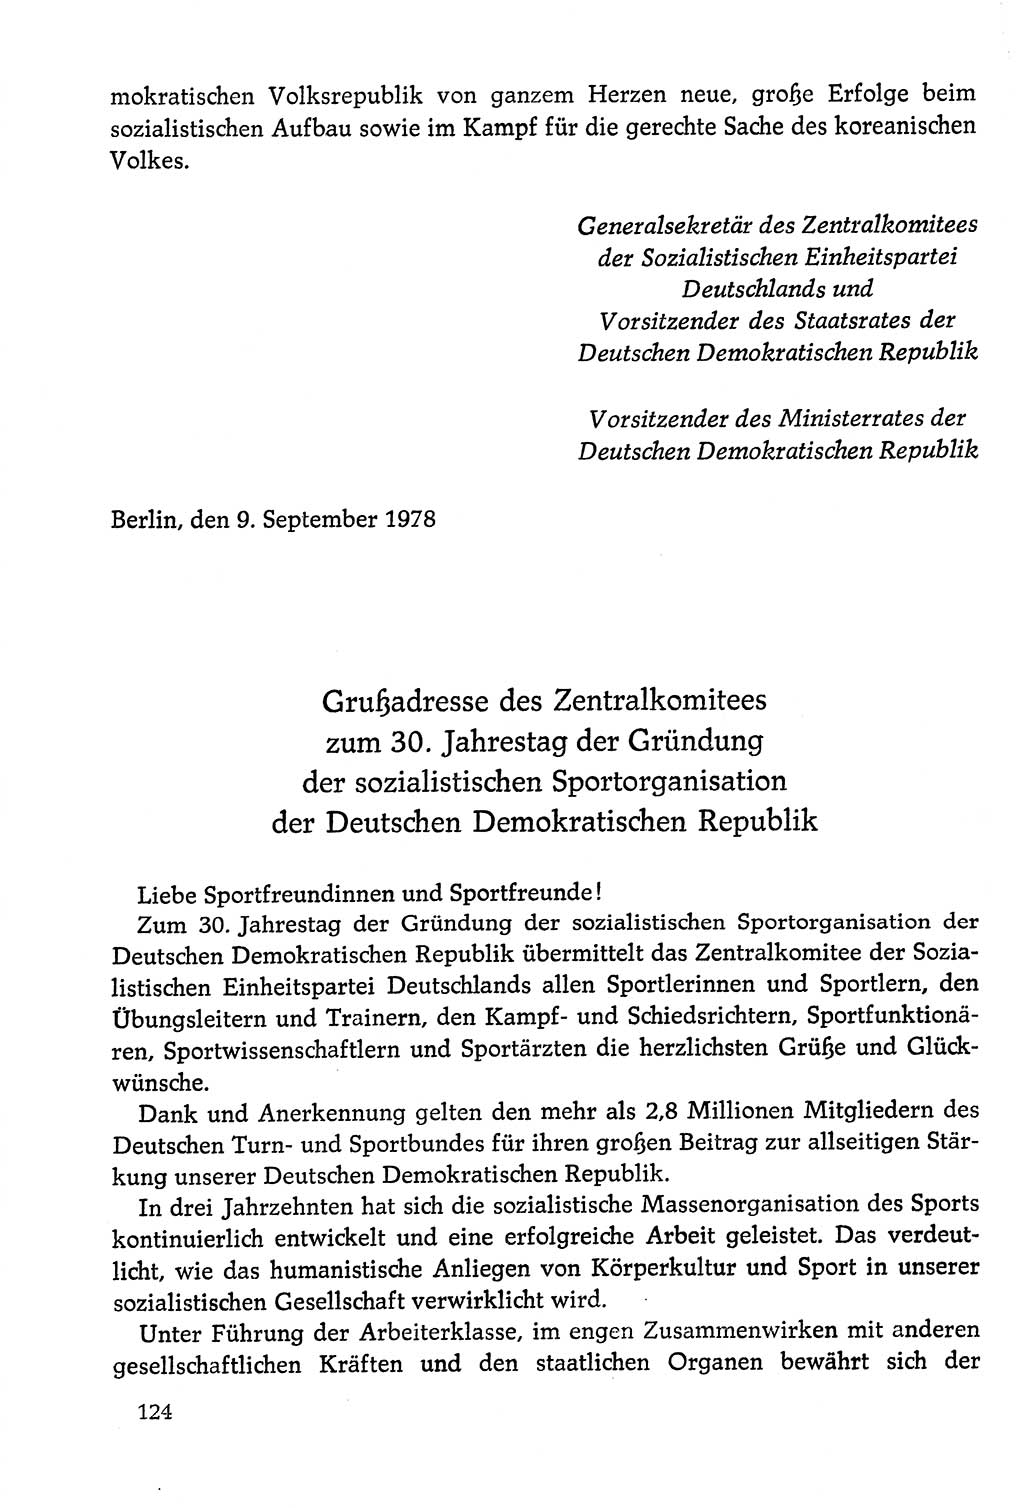 Dokumente der Sozialistischen Einheitspartei Deutschlands (SED) [Deutsche Demokratische Republik (DDR)] 1978-1979, Seite 124 (Dok. SED DDR 1978-1979, S. 124)